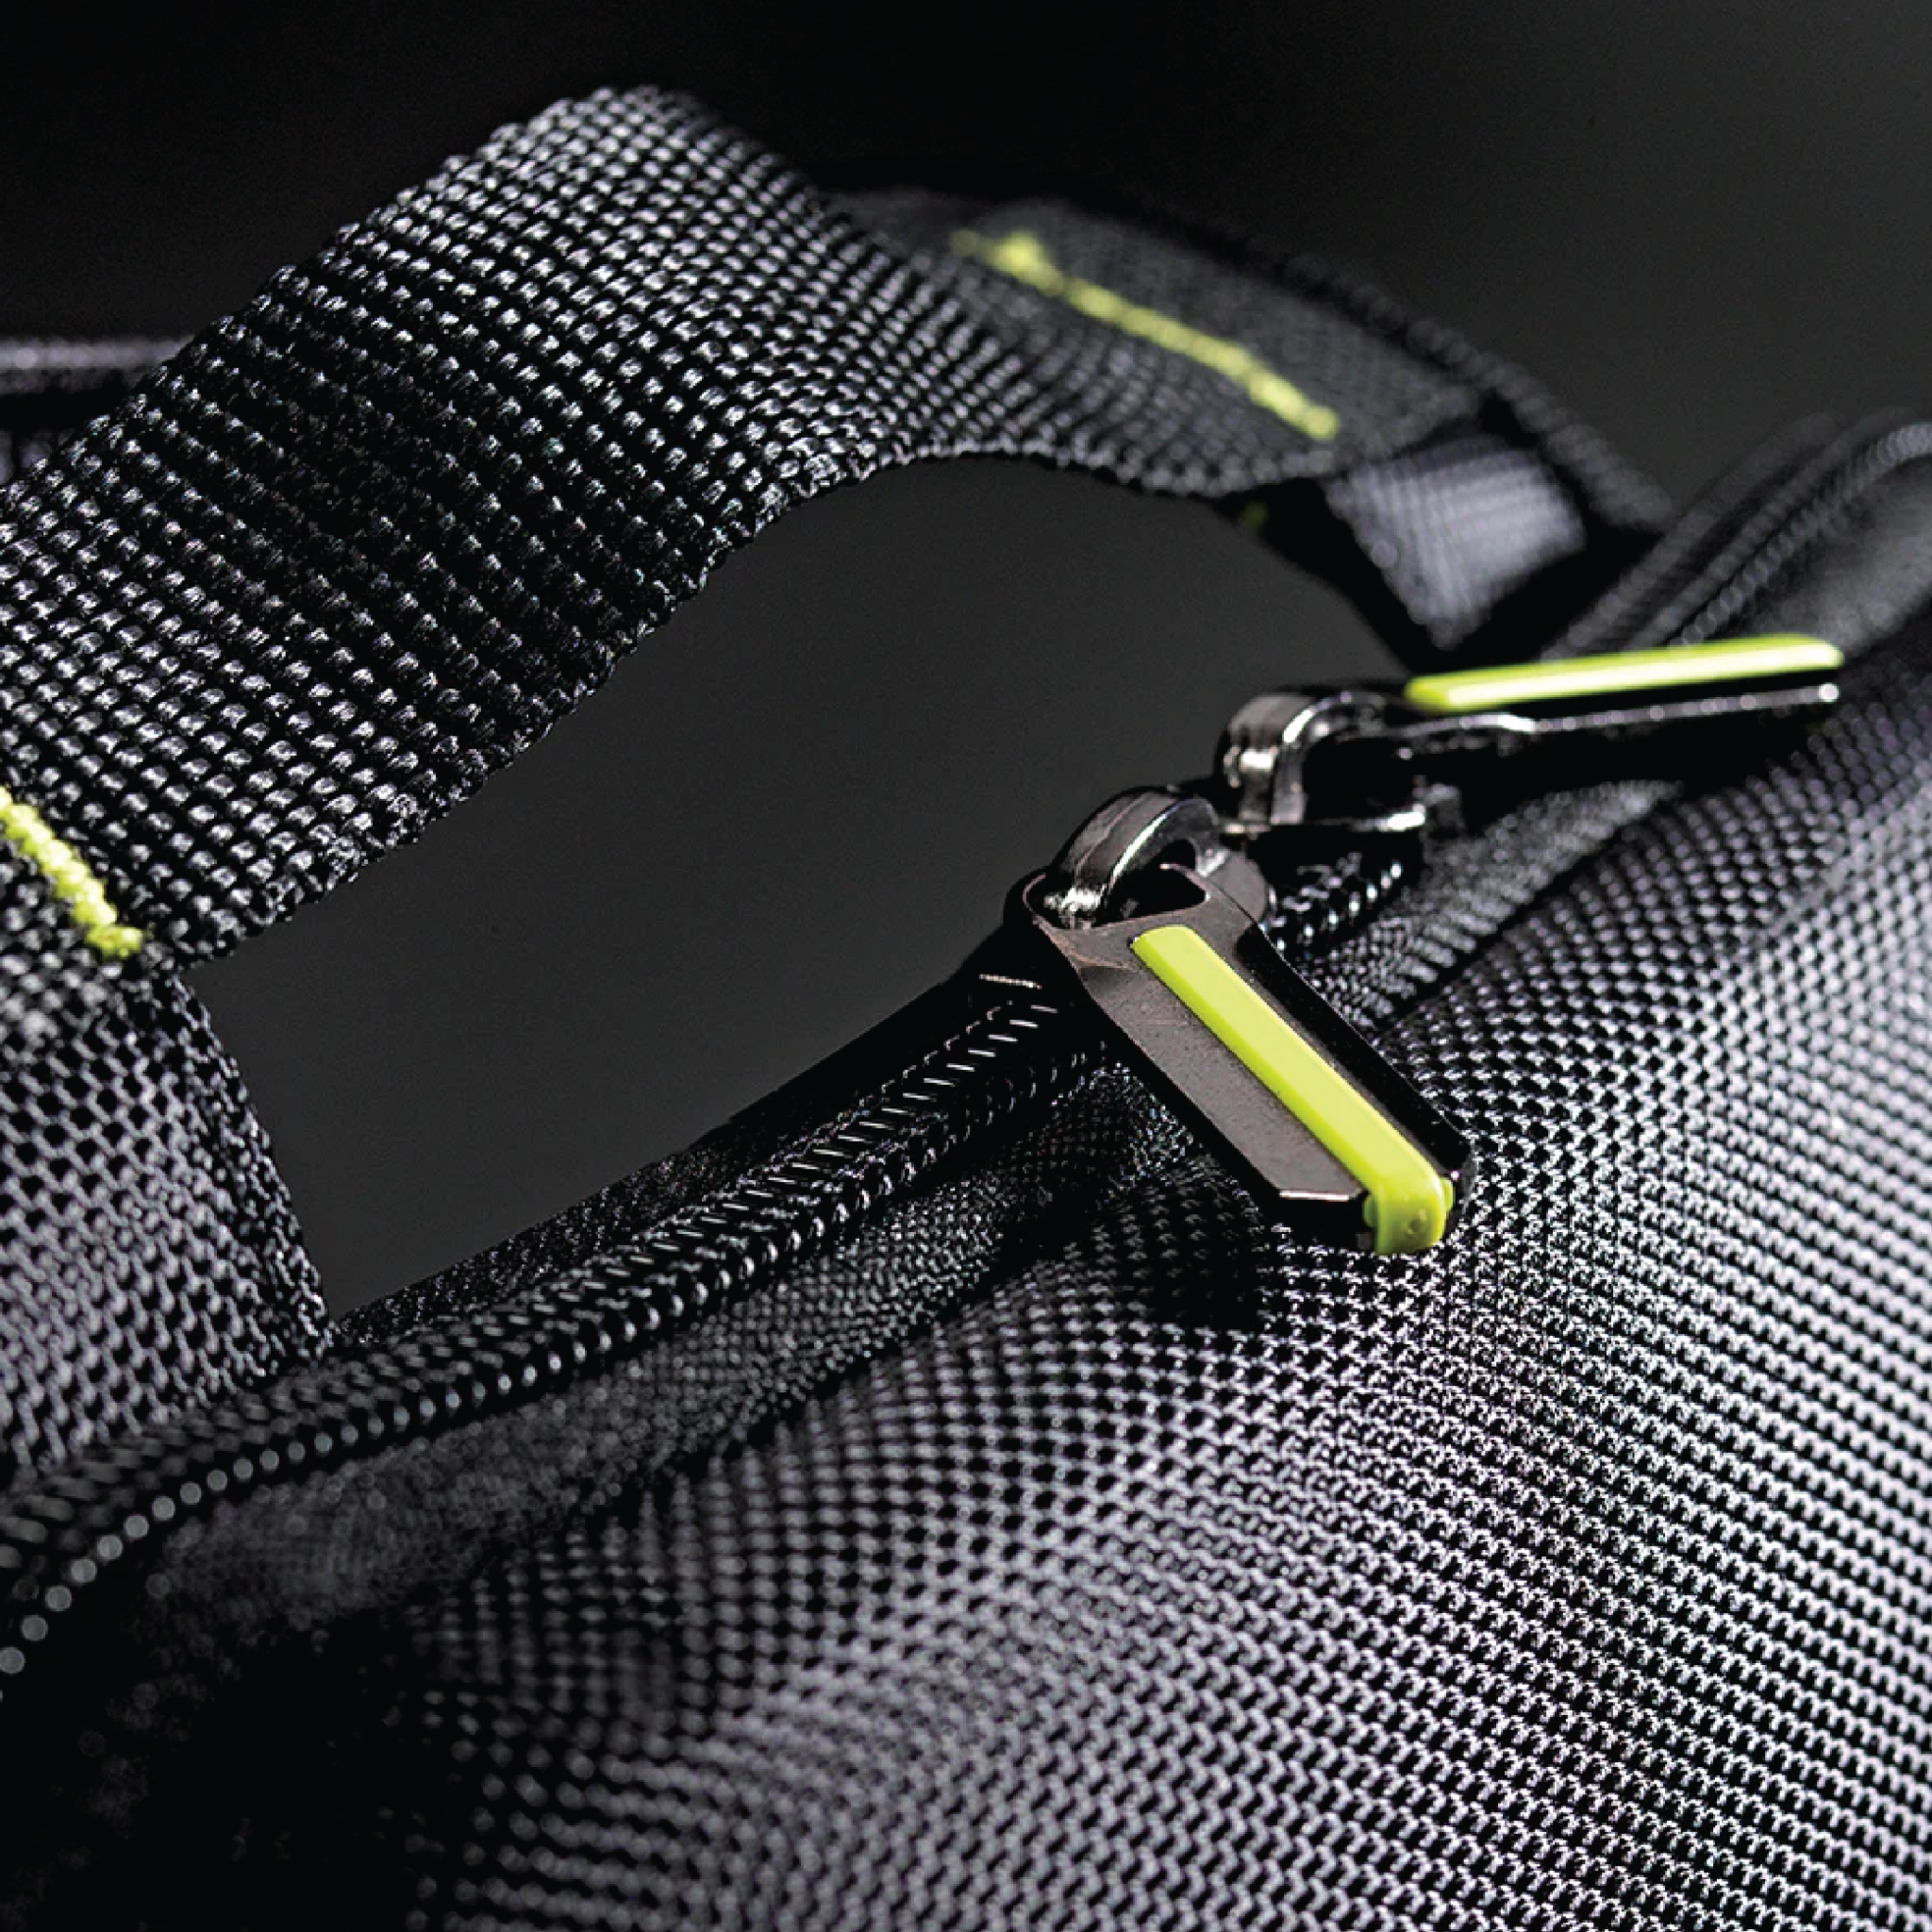  Túi đeo chéo Solo Active Universal 10.2 inch STM751 (Đen xám) - Bảo hành chính hãng 05 năm 